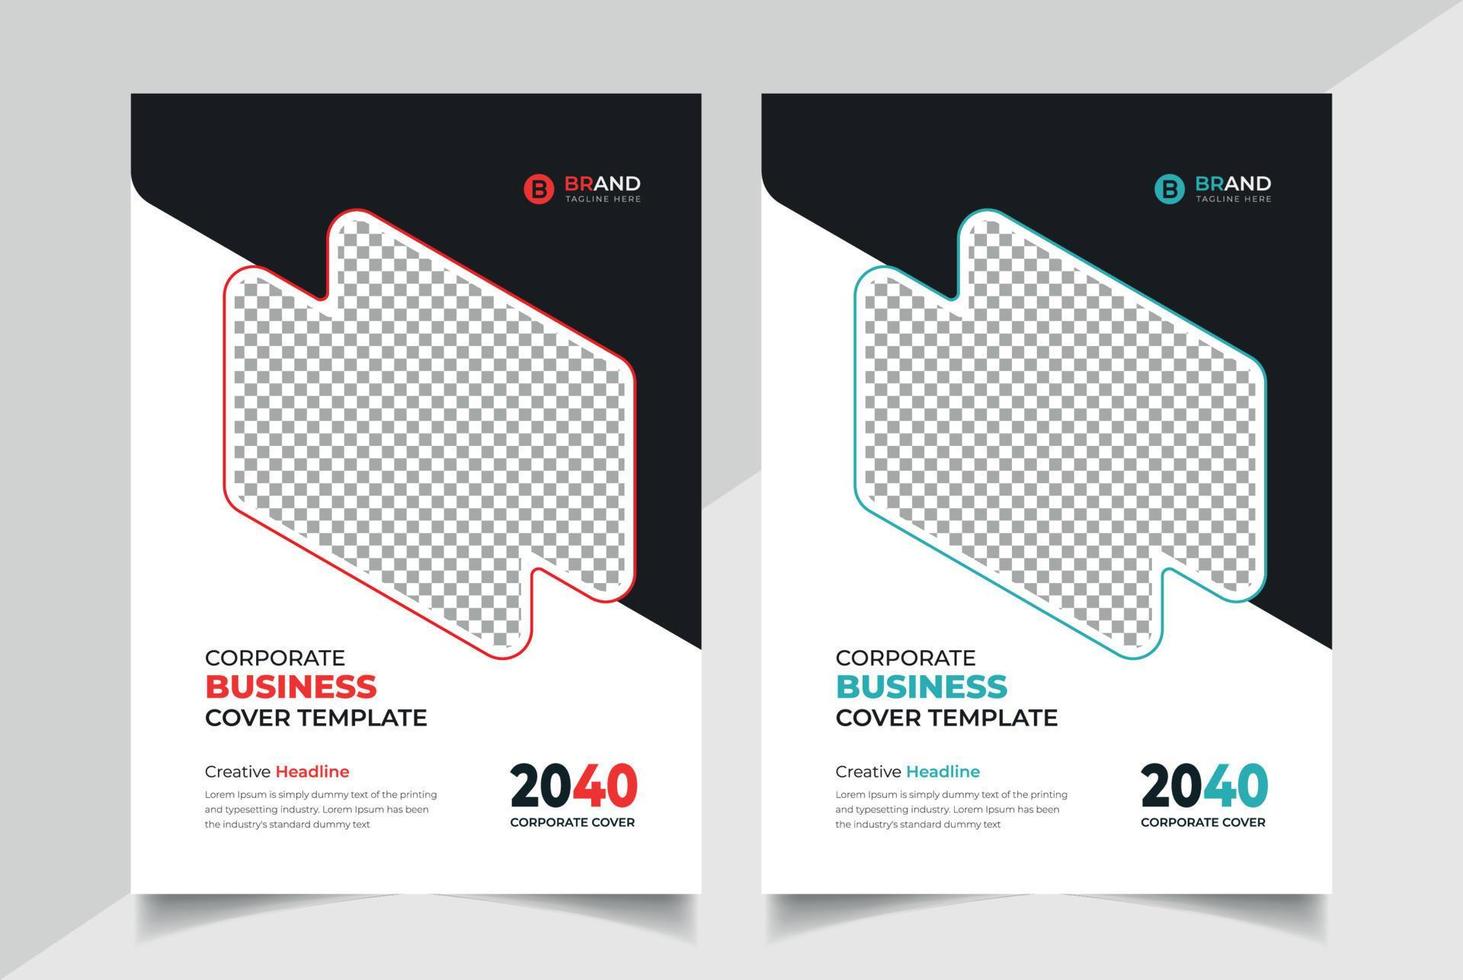 brochure d'entreprise géométrique colorée créative ou modèle de mise en page de dépliant, conception de modèle de couverture de rapport annuel vecteur